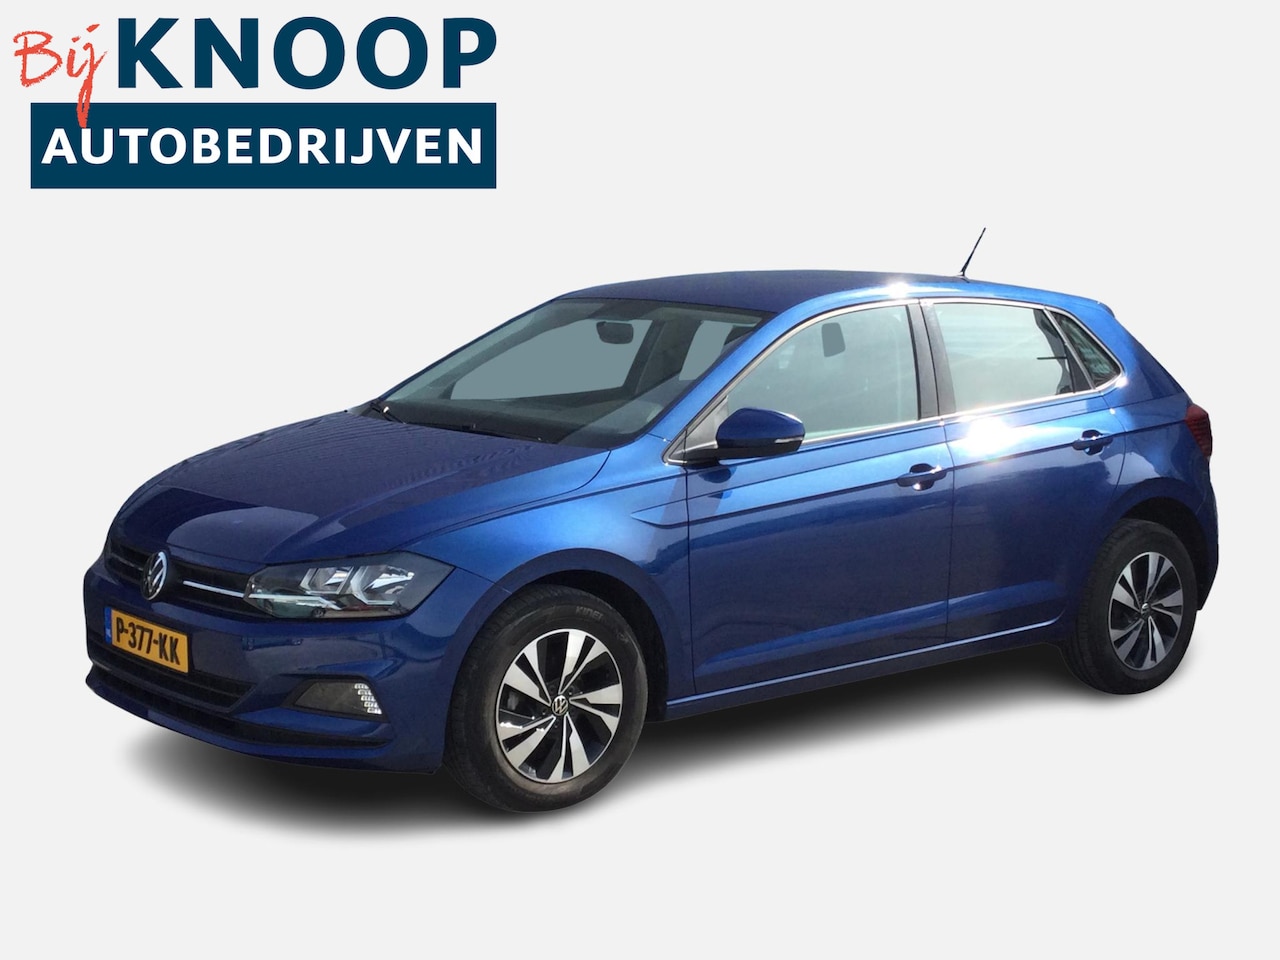 wang ophouden Verborgen Volkswagen Polo 1.0 TSI Comfortline DSG-AUTOMAAT 2021 Benzine - Occasion te  koop op AutoWereld.nl